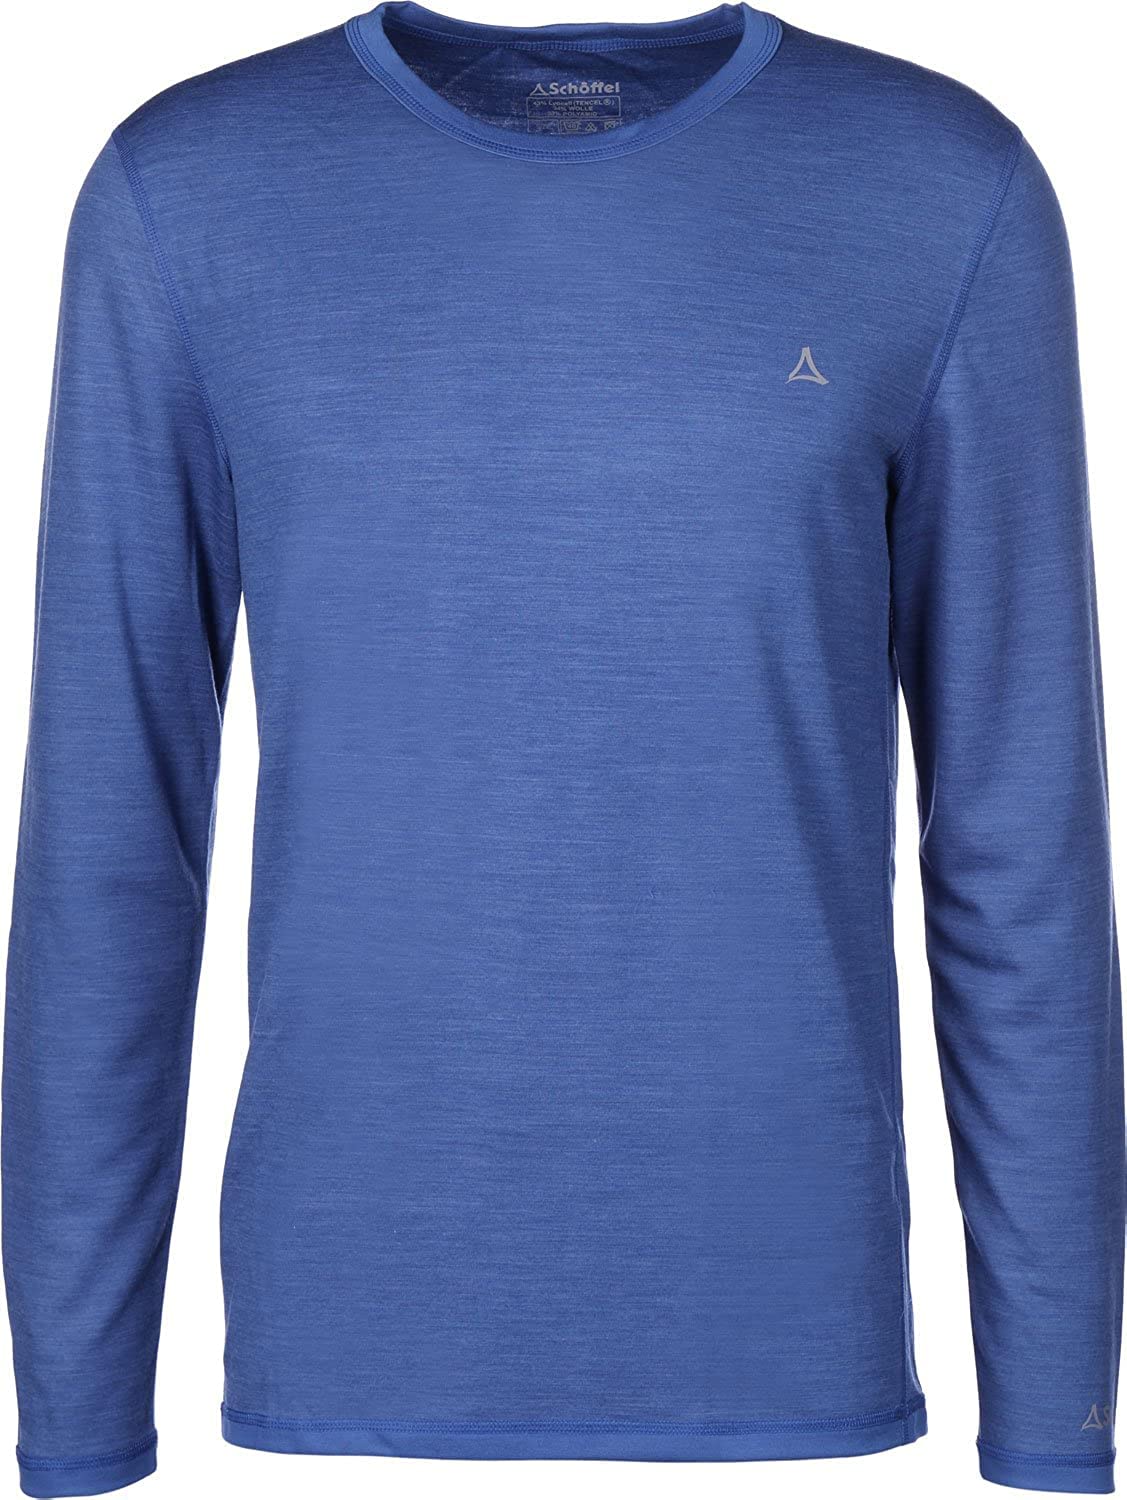 Schöffel Herren Merino Sport Shirt 1/1 Arm M, temperaturregulierendes Langarmshirt, atmungsaktives Funktionsunterwäsche-Shirt in Wollqualität, imperial b, M